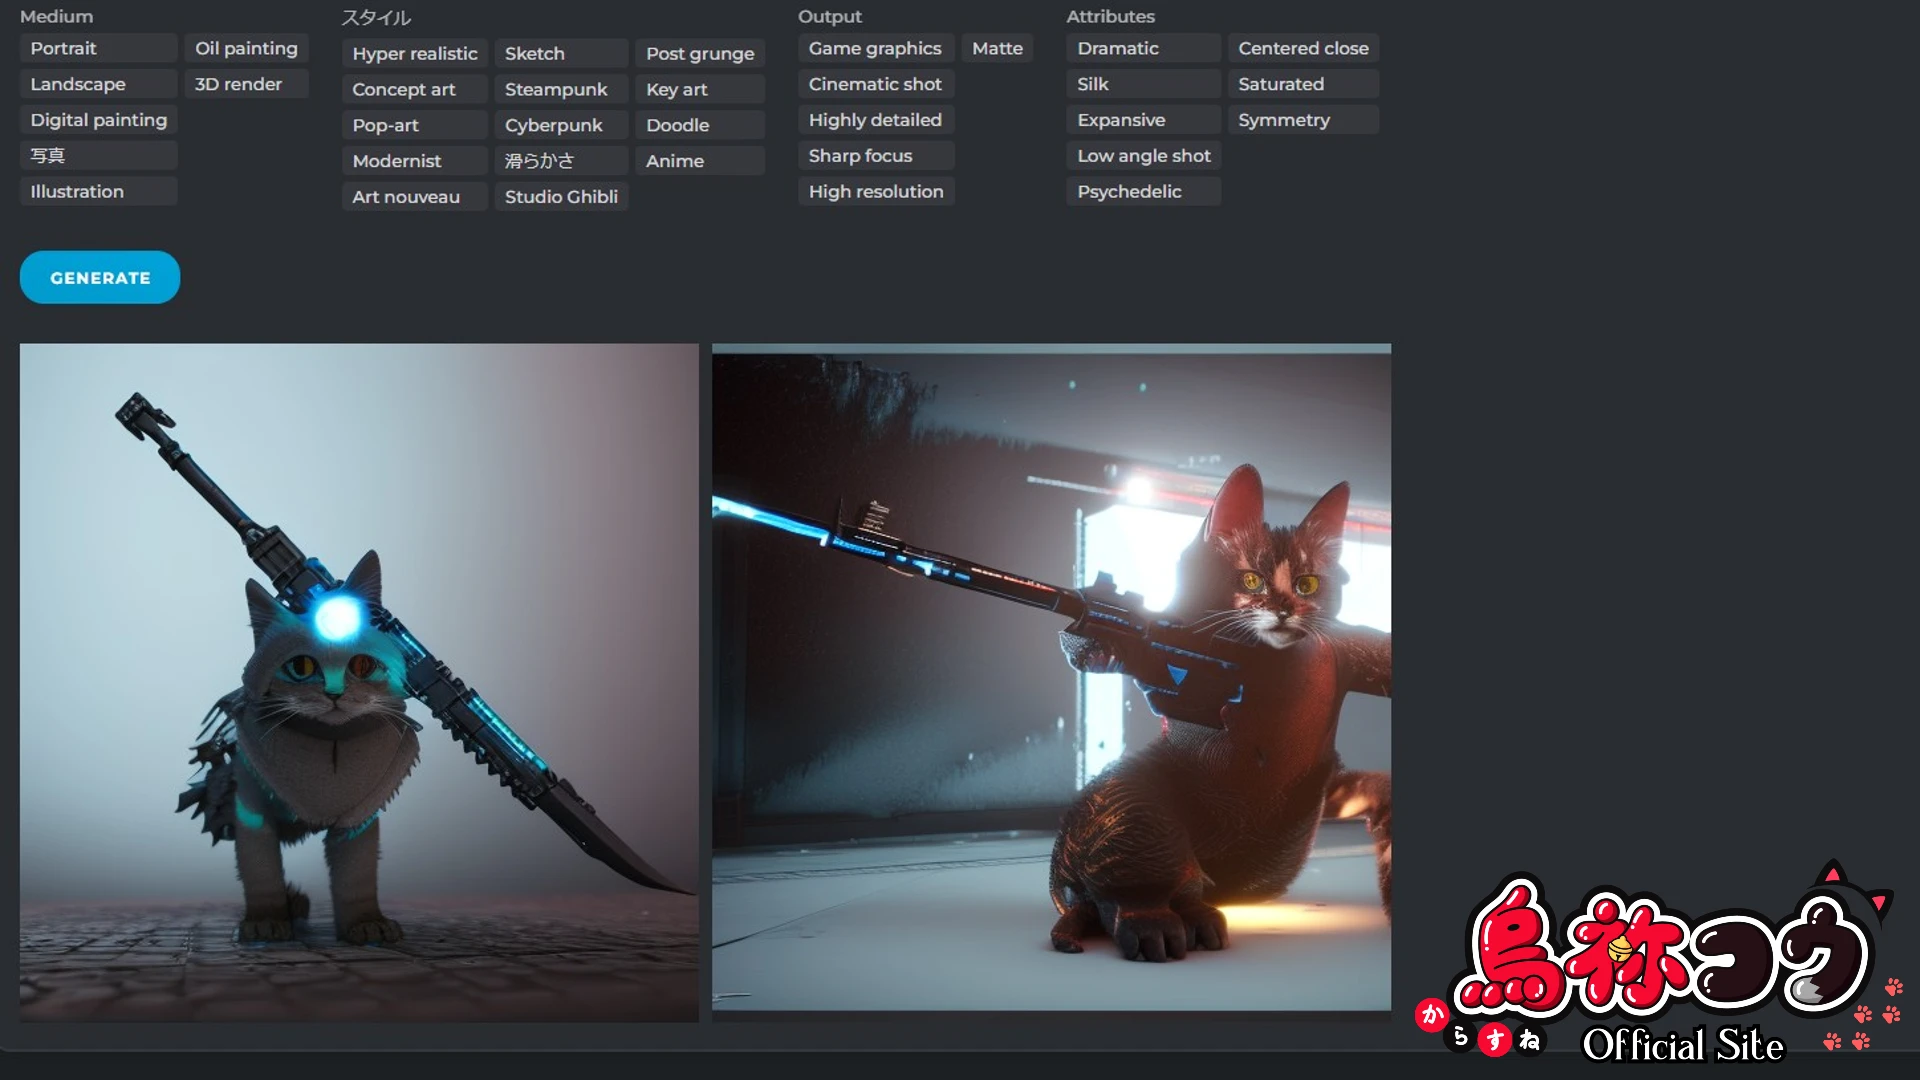 Pixlr の画像生成 AI で作成したサイバーパンクな武装猫